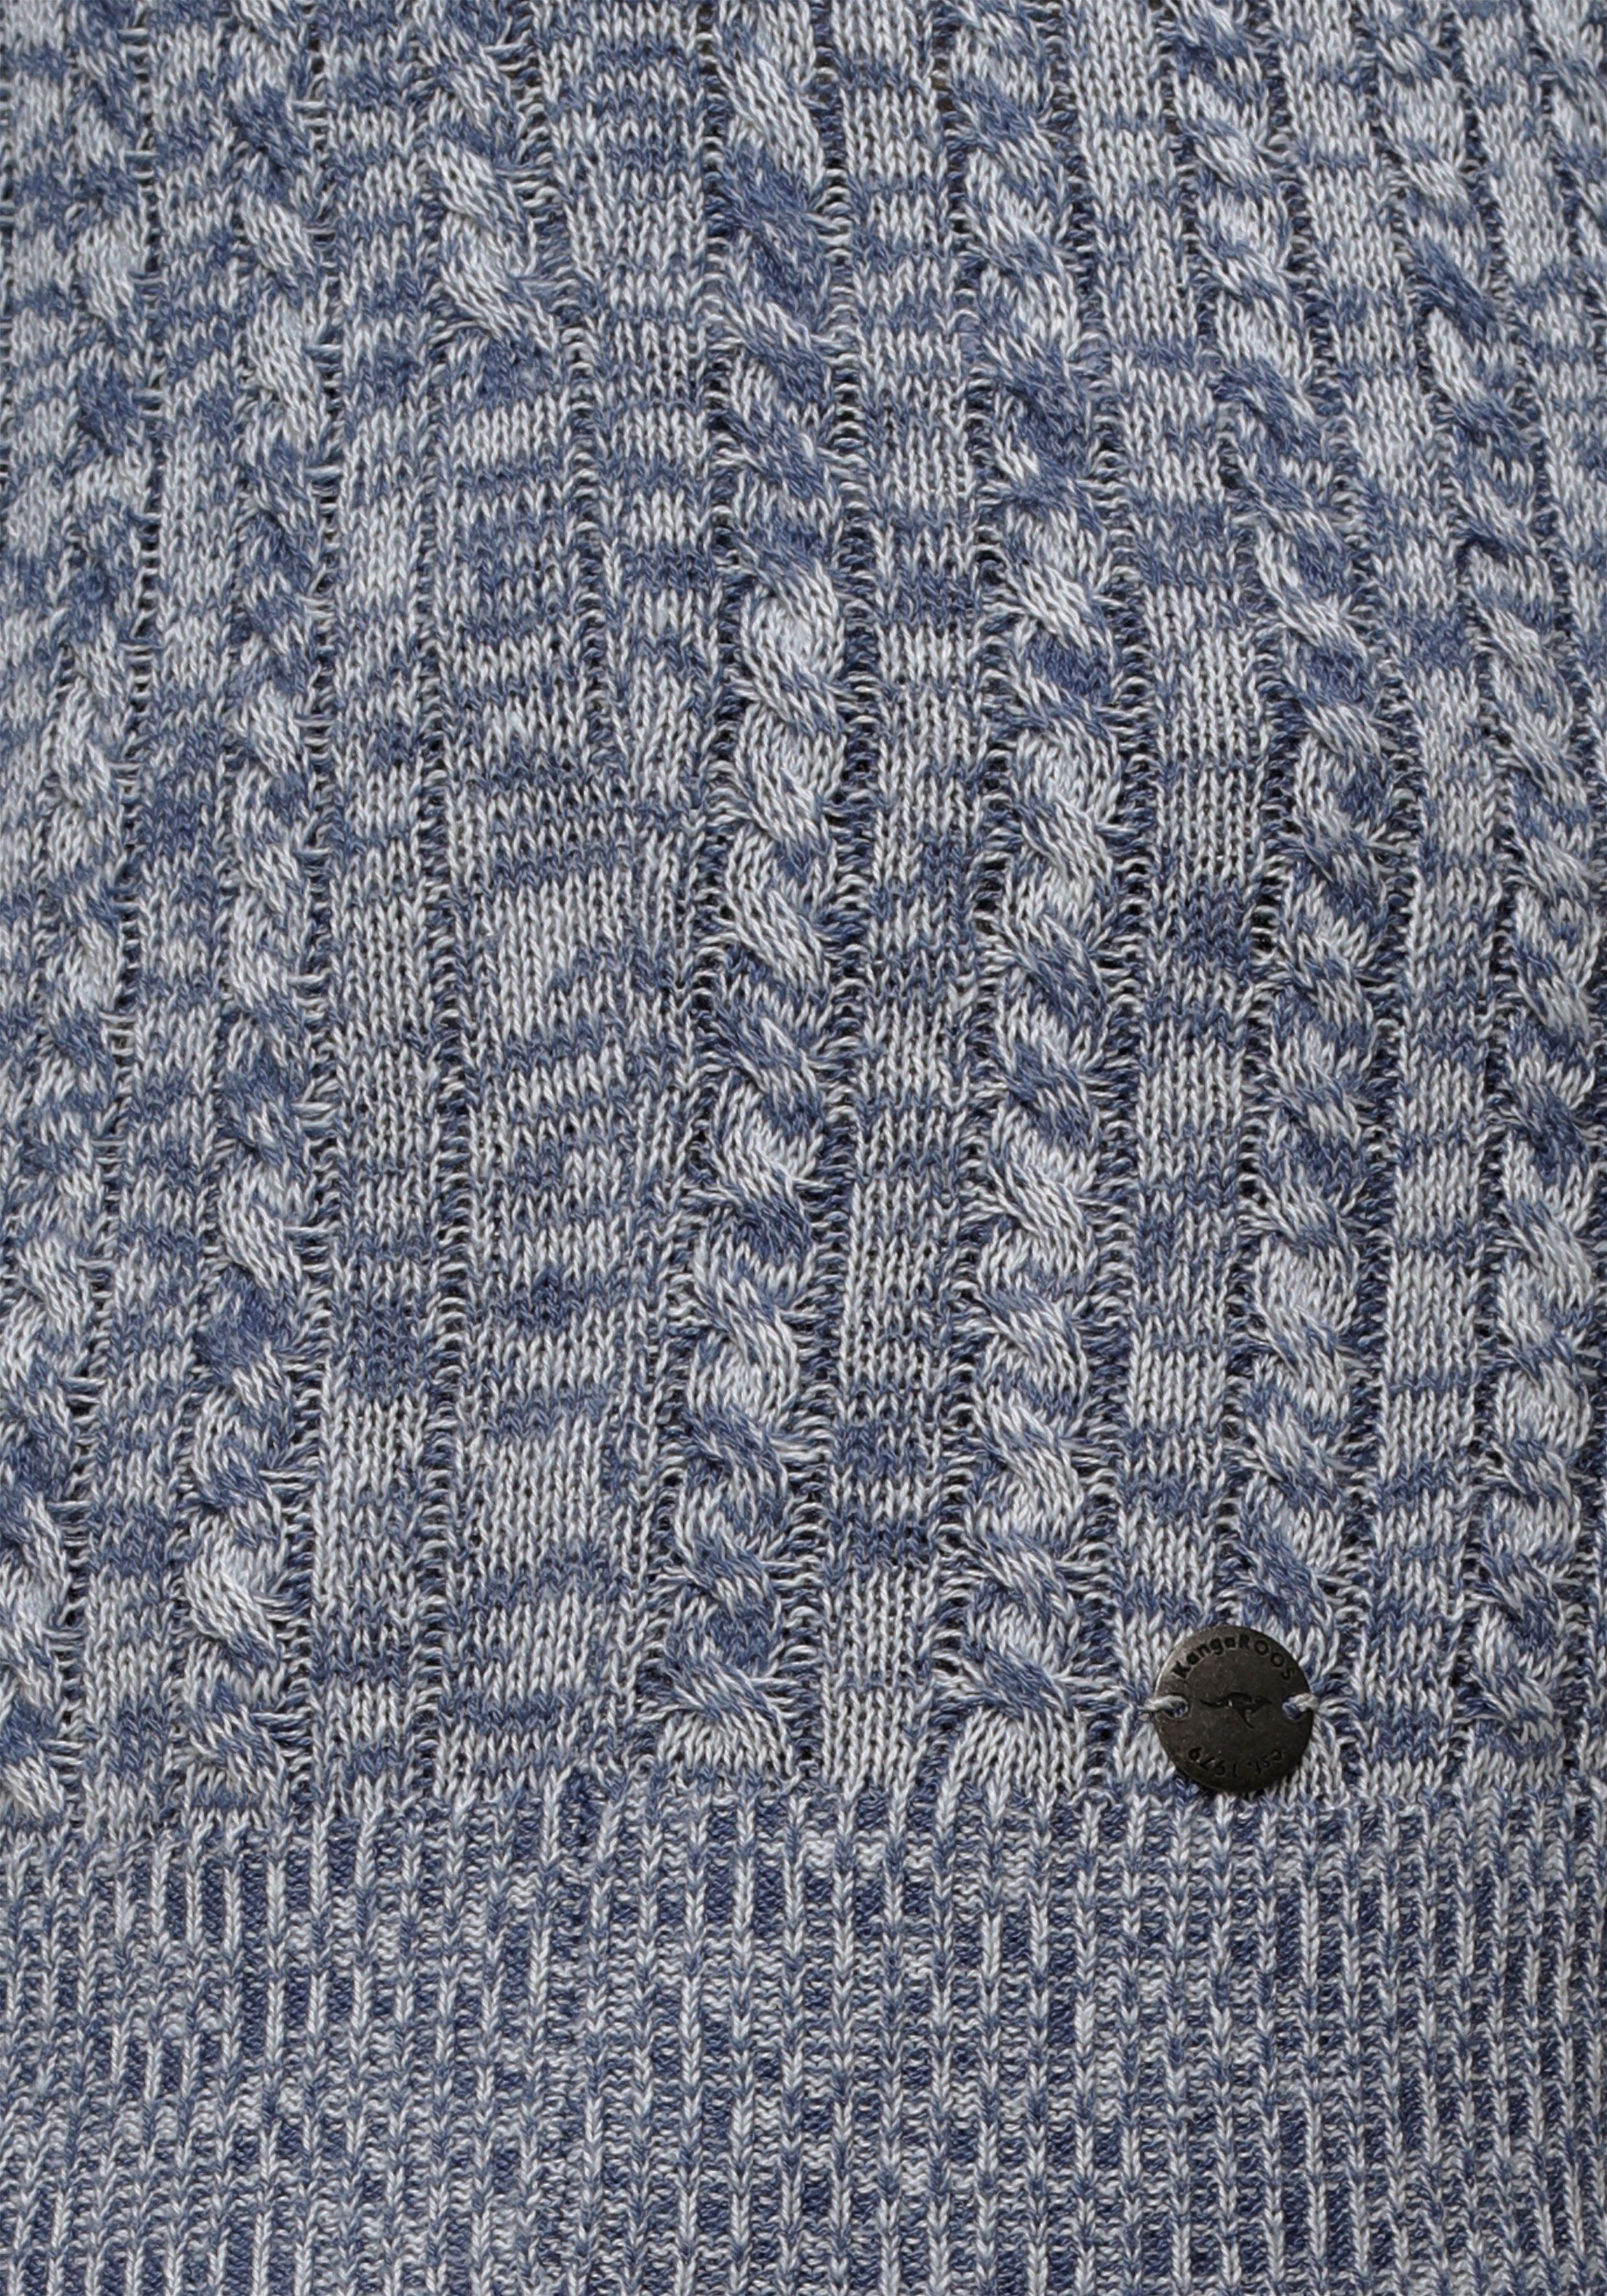 Zopf-Strick-Design im blau-weiß-meliert Kapuzenpullover feinen KangaROOS